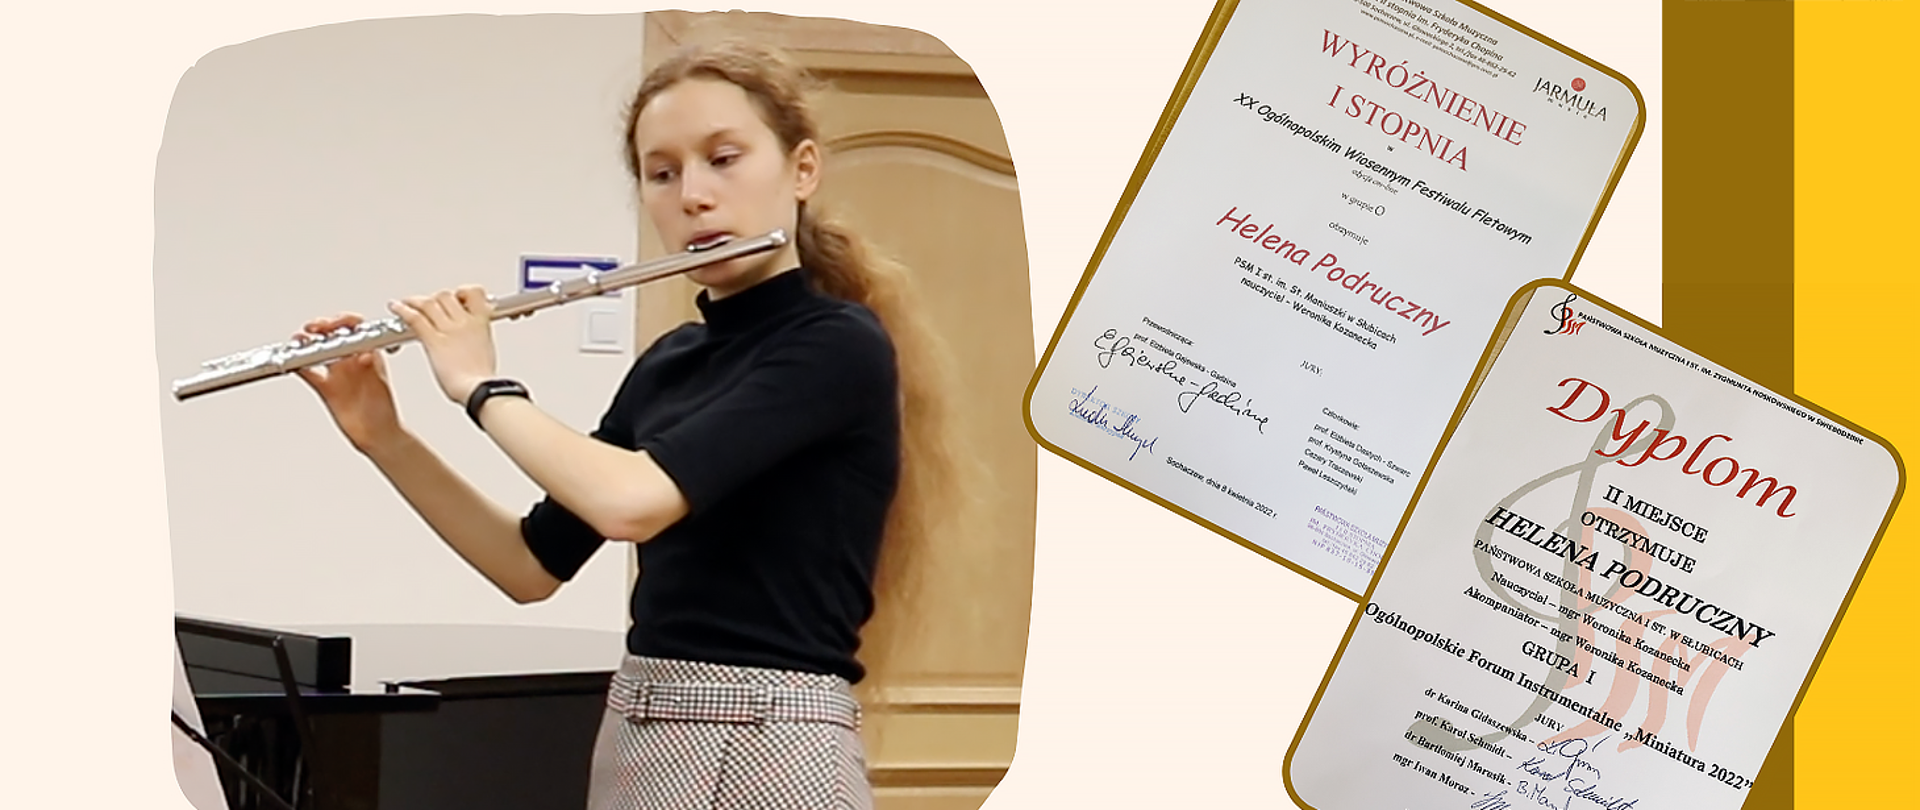 Plakat, na jasnym tle wycinek zdjęcia przedstawiający dziewczynę grającą na flecie, po prawej strony zdjęcia dwóch dyplomów z nazwiskiem Helena Podruczny i opisem nagrodzonych osiągnięć.